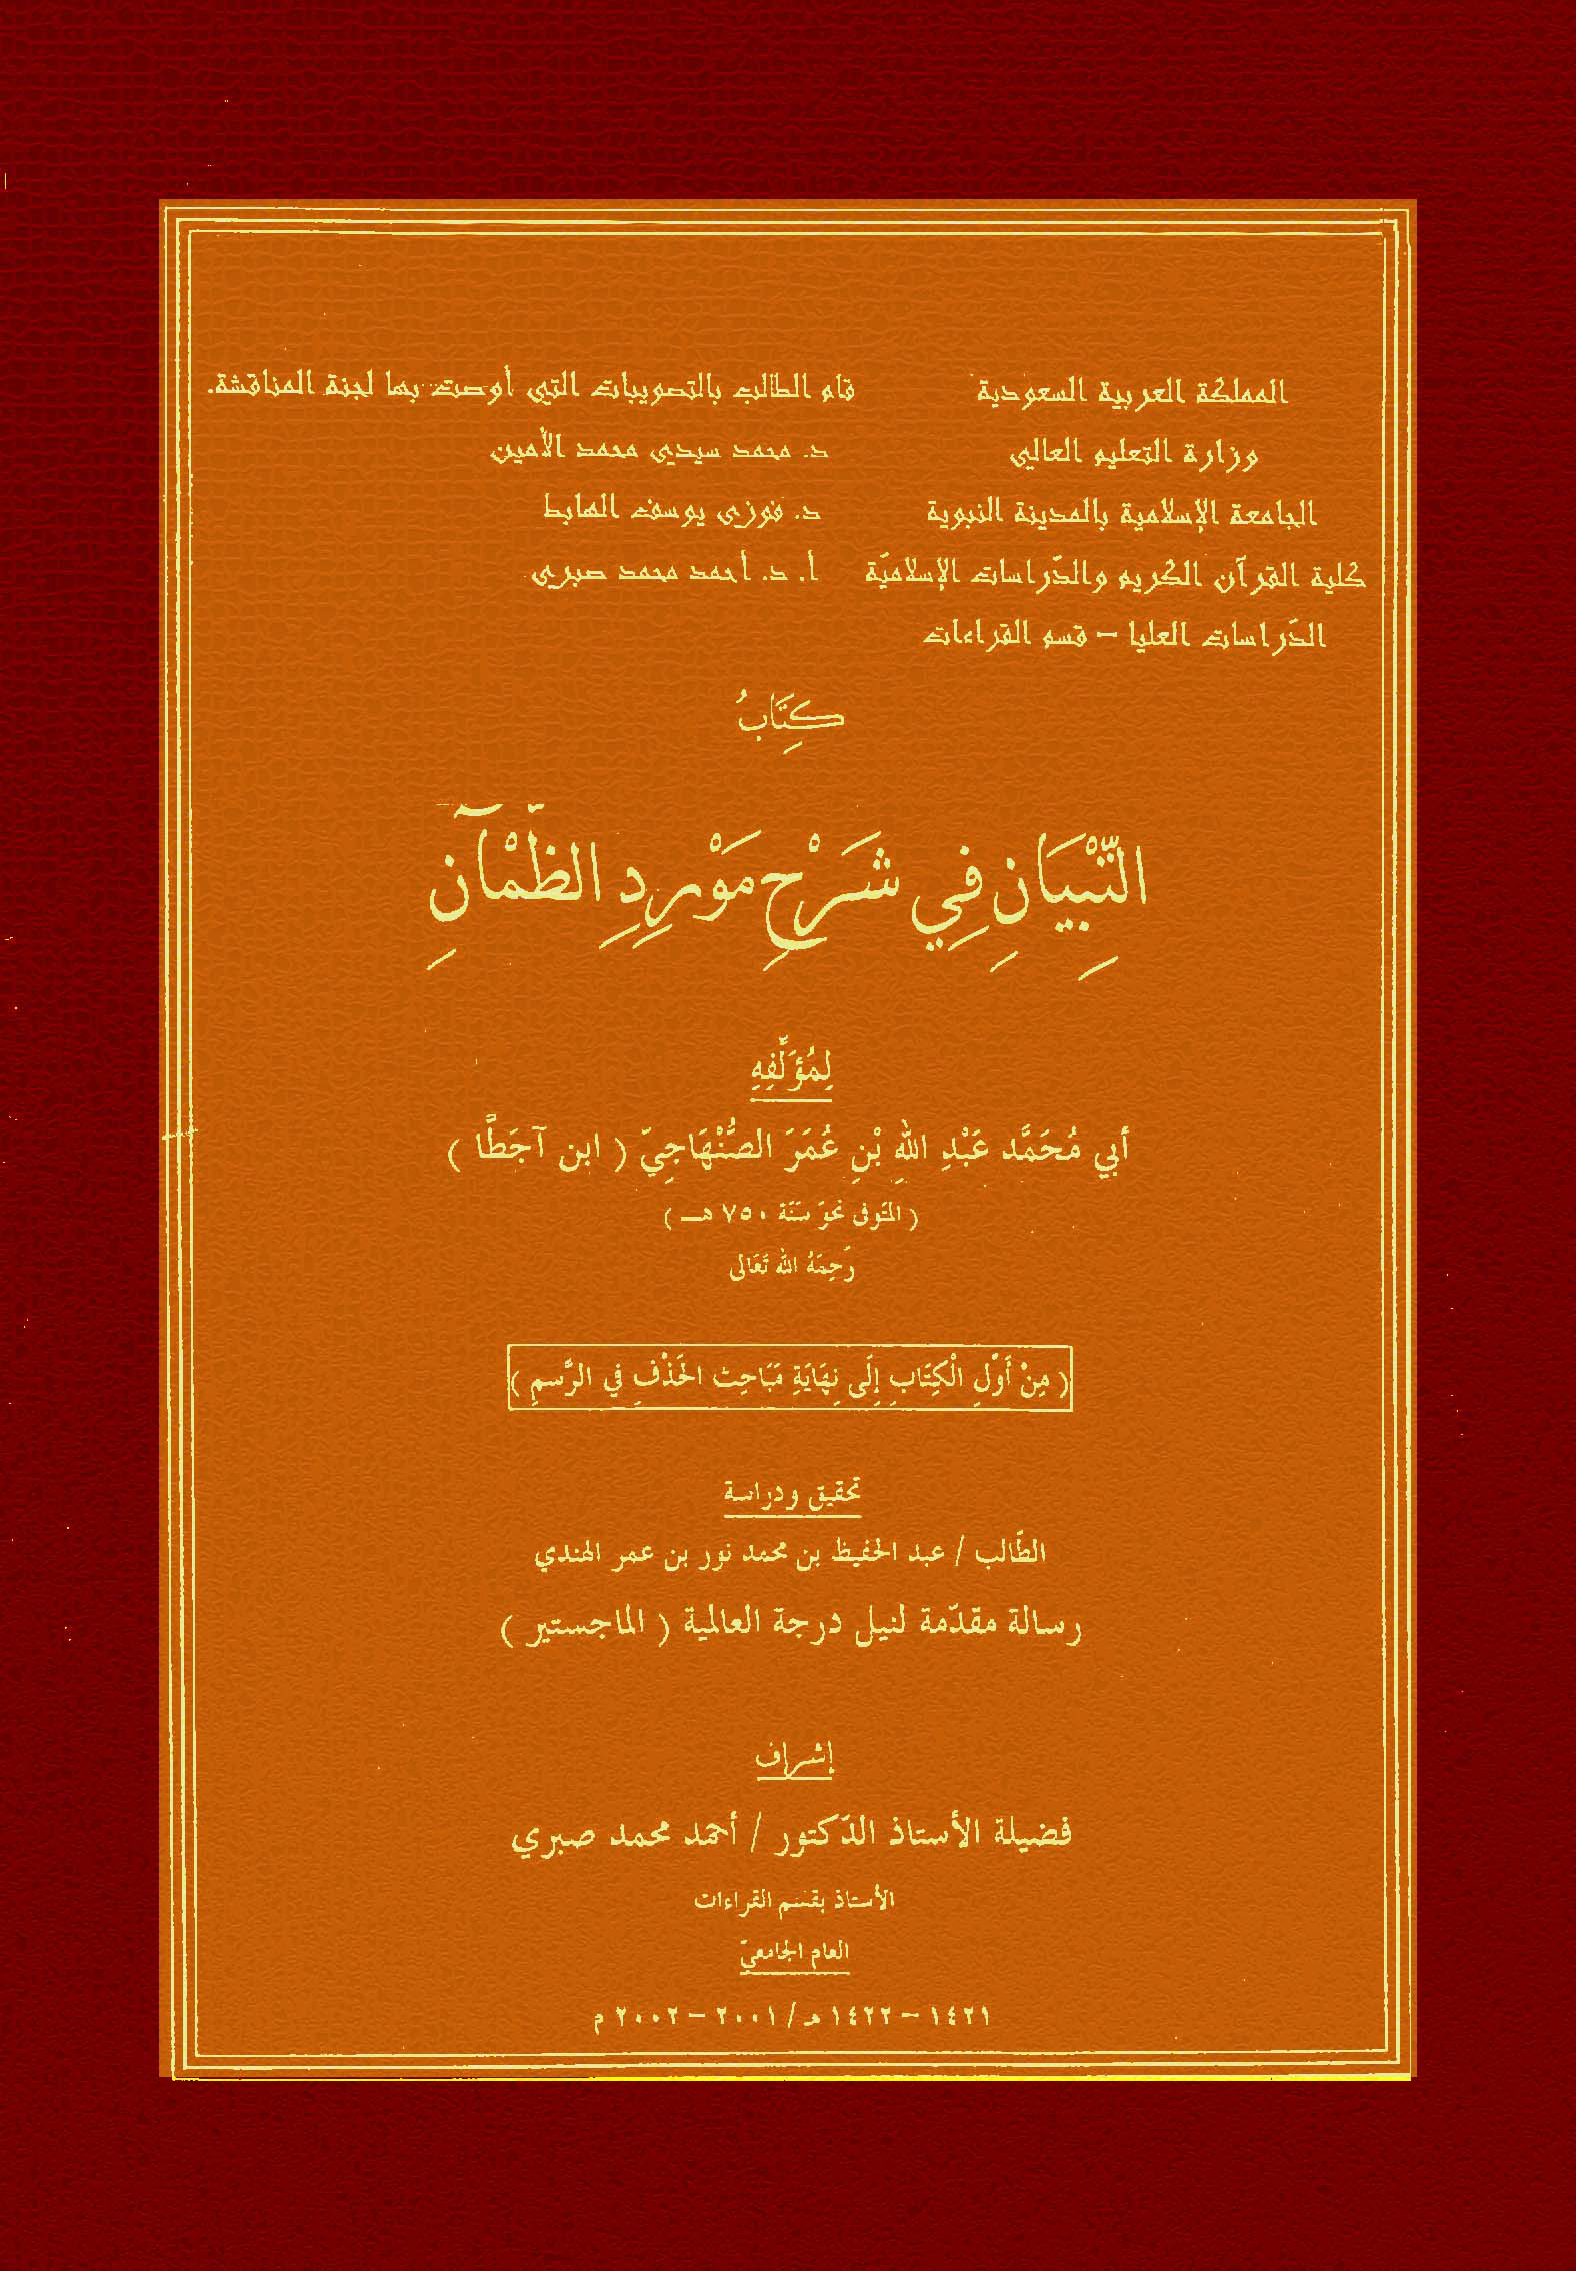 تحميل كتاب التبيان في شرح مورد الظمآن (من أول الكتاب إلى نهاية مباحث الحذف في الرسم) لـِ: الإمام أبو محمد عبد الله بن عمر الصنهاجي، ابن آجطَّا (ت 750)